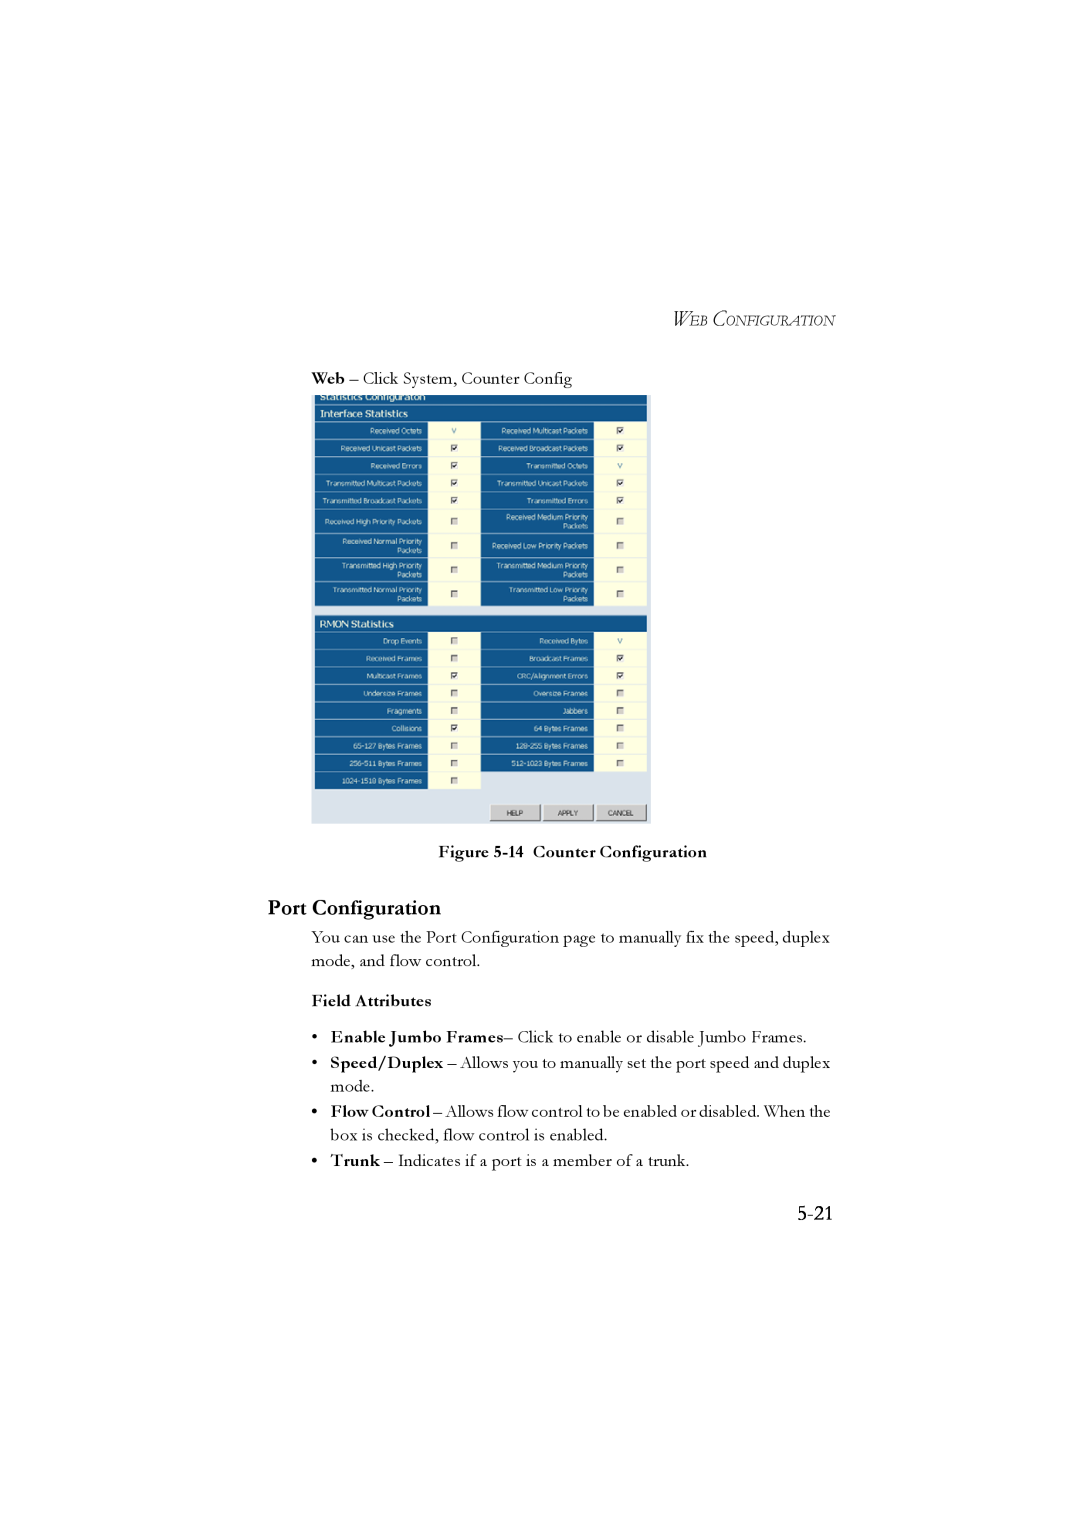 LevelOne GSW-2476 user manual 5-21, Port Configuration, 14 Counter Configuration, Field Attributes 